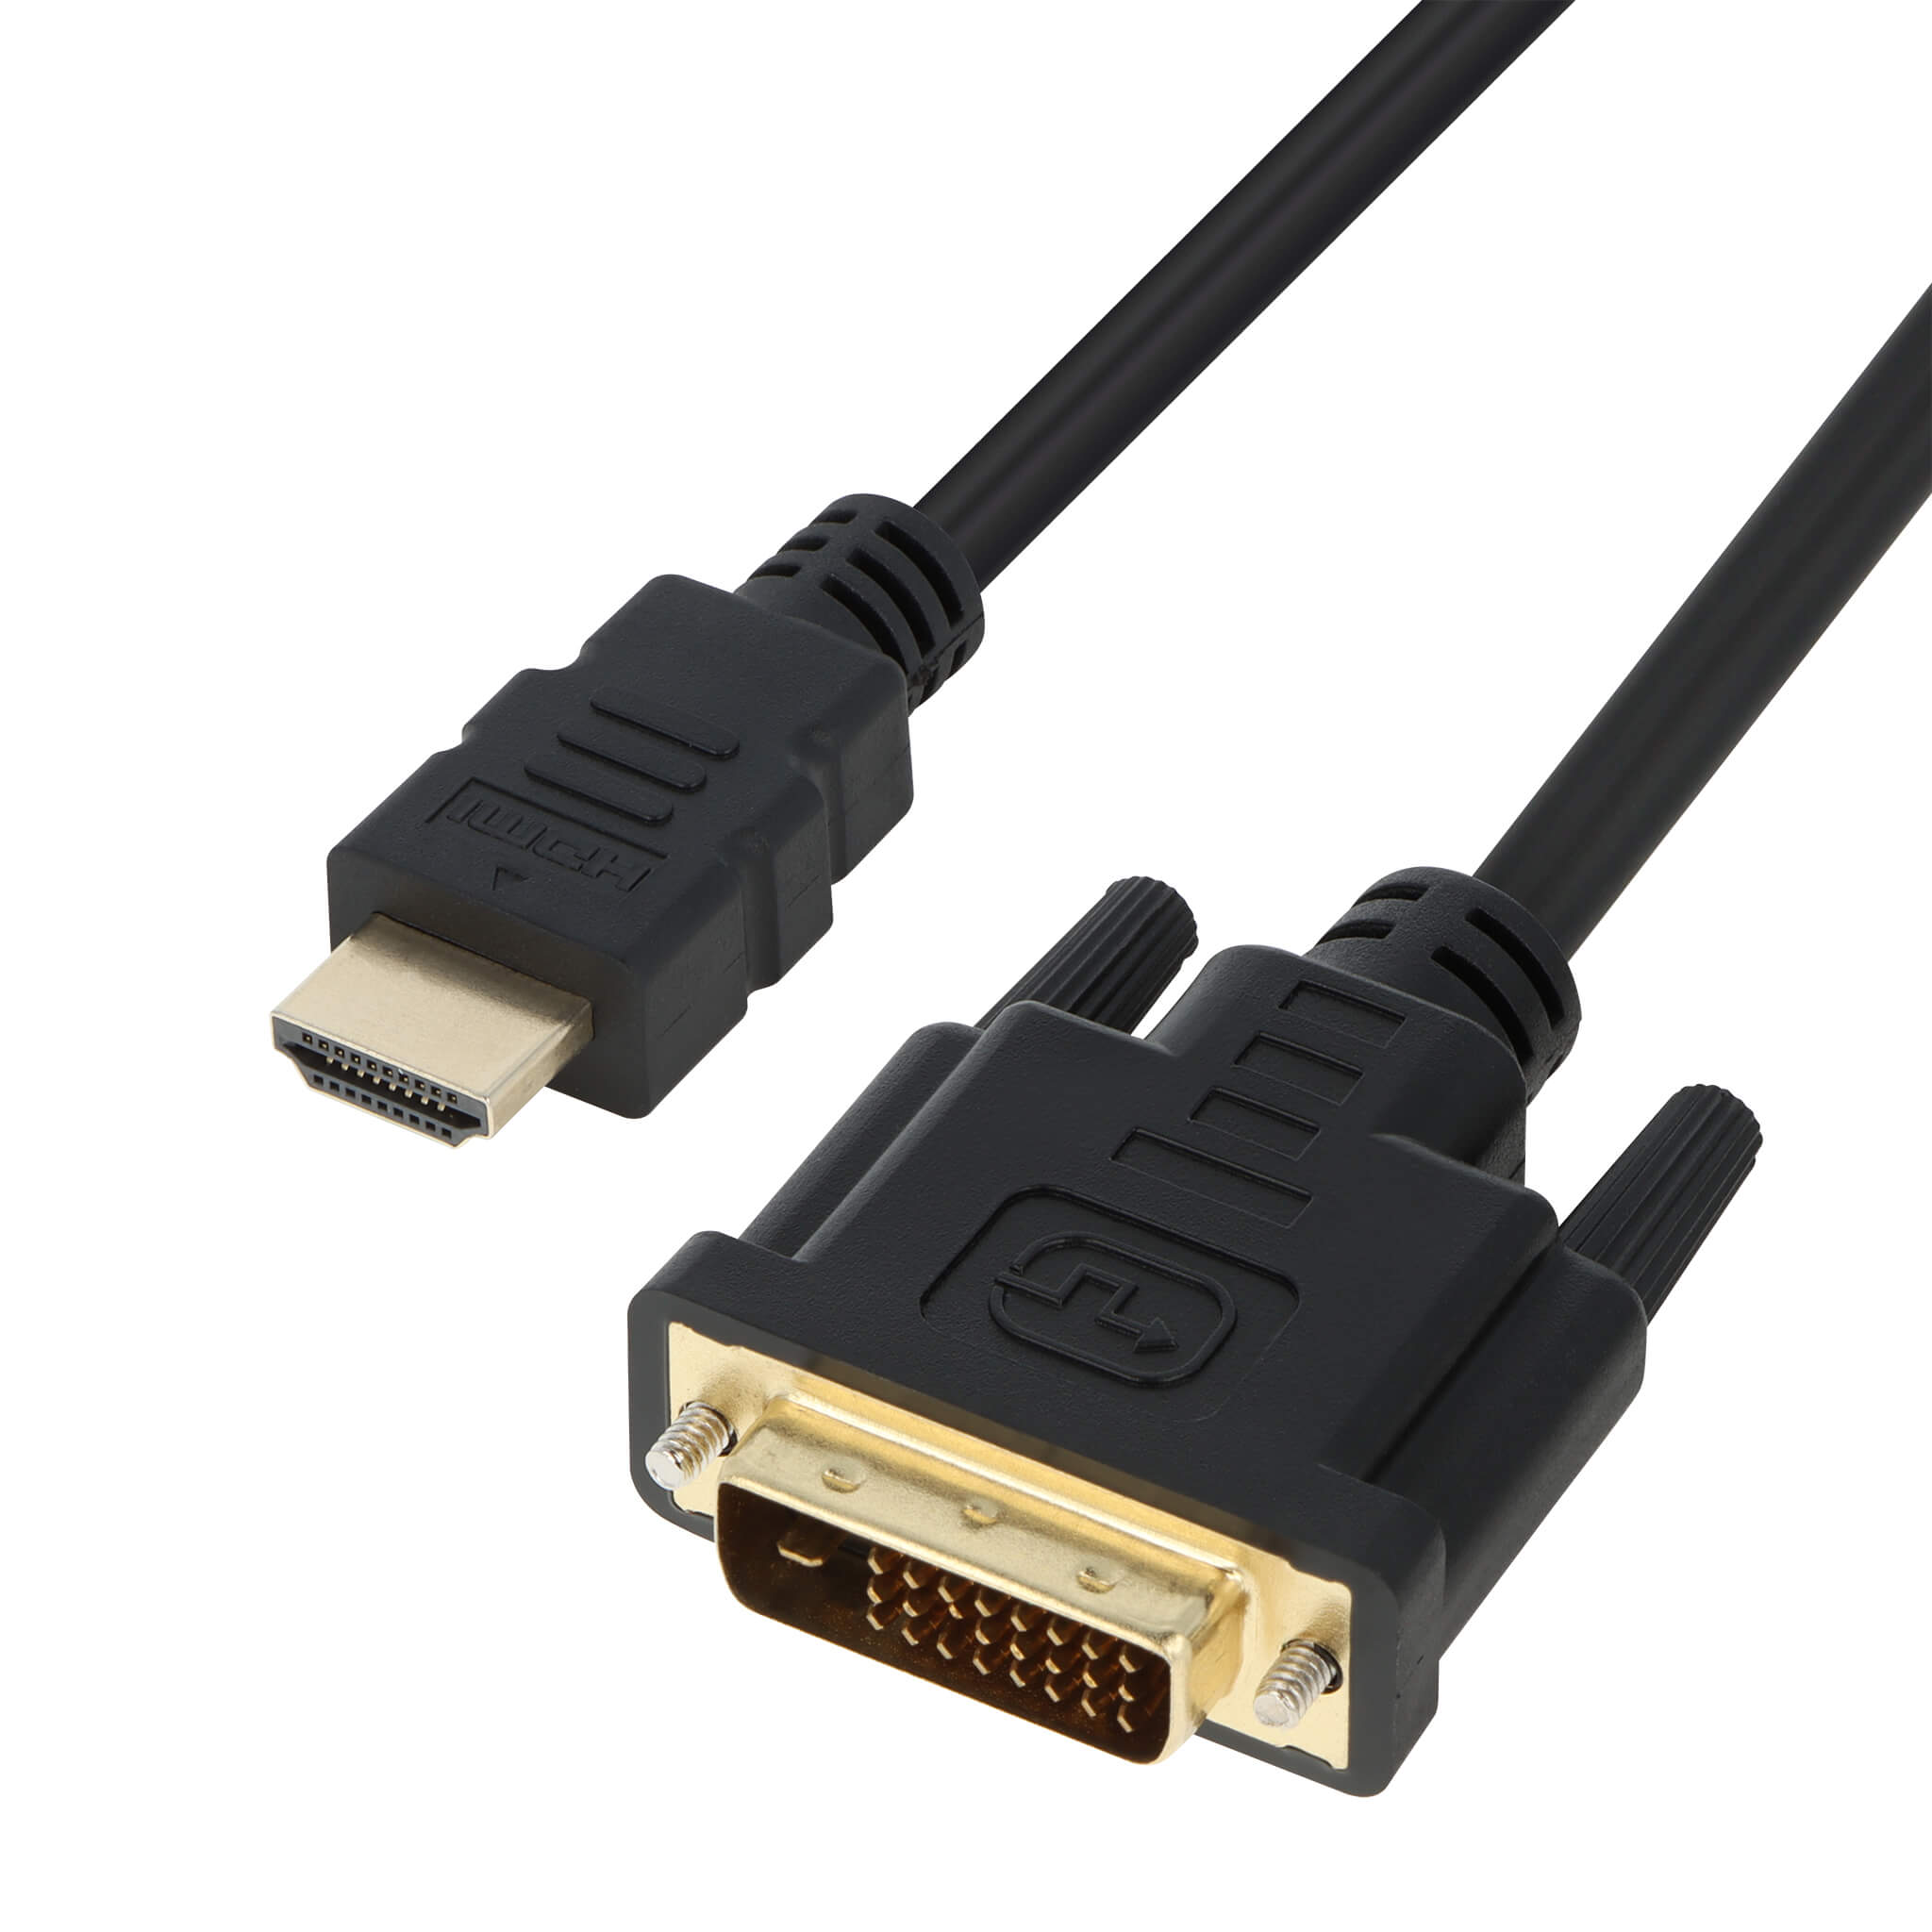 B olie Tutor markering HDMI / DVI-D Bi-Directional Cable 6ft (M/M) – VisionTek.com